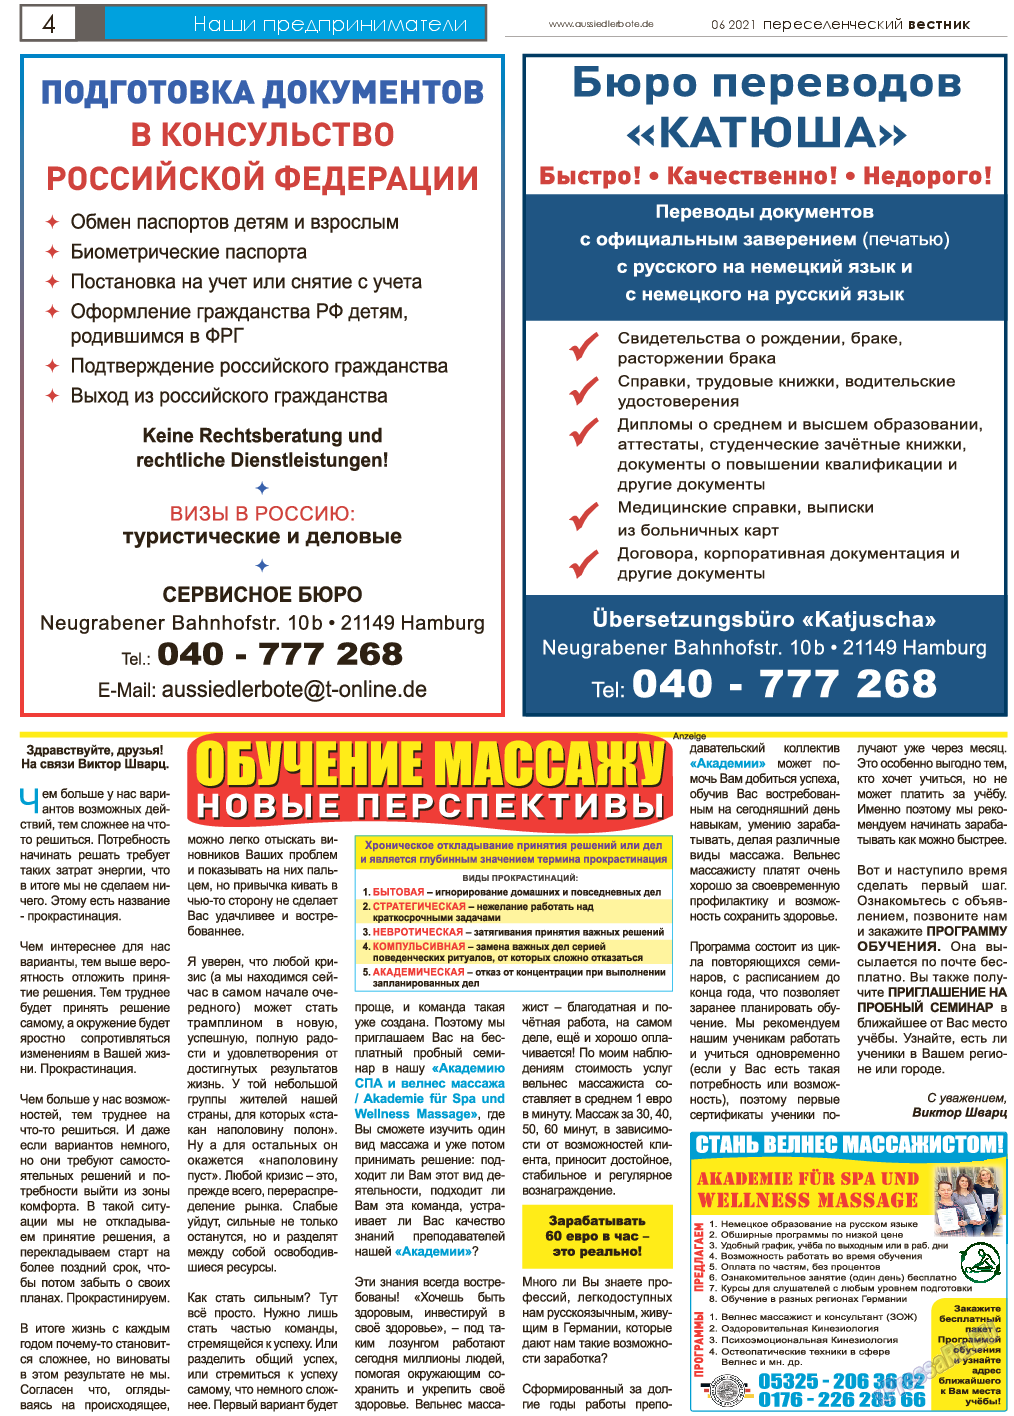 Переселенческий вестник, газета. 2021 №6 стр.4